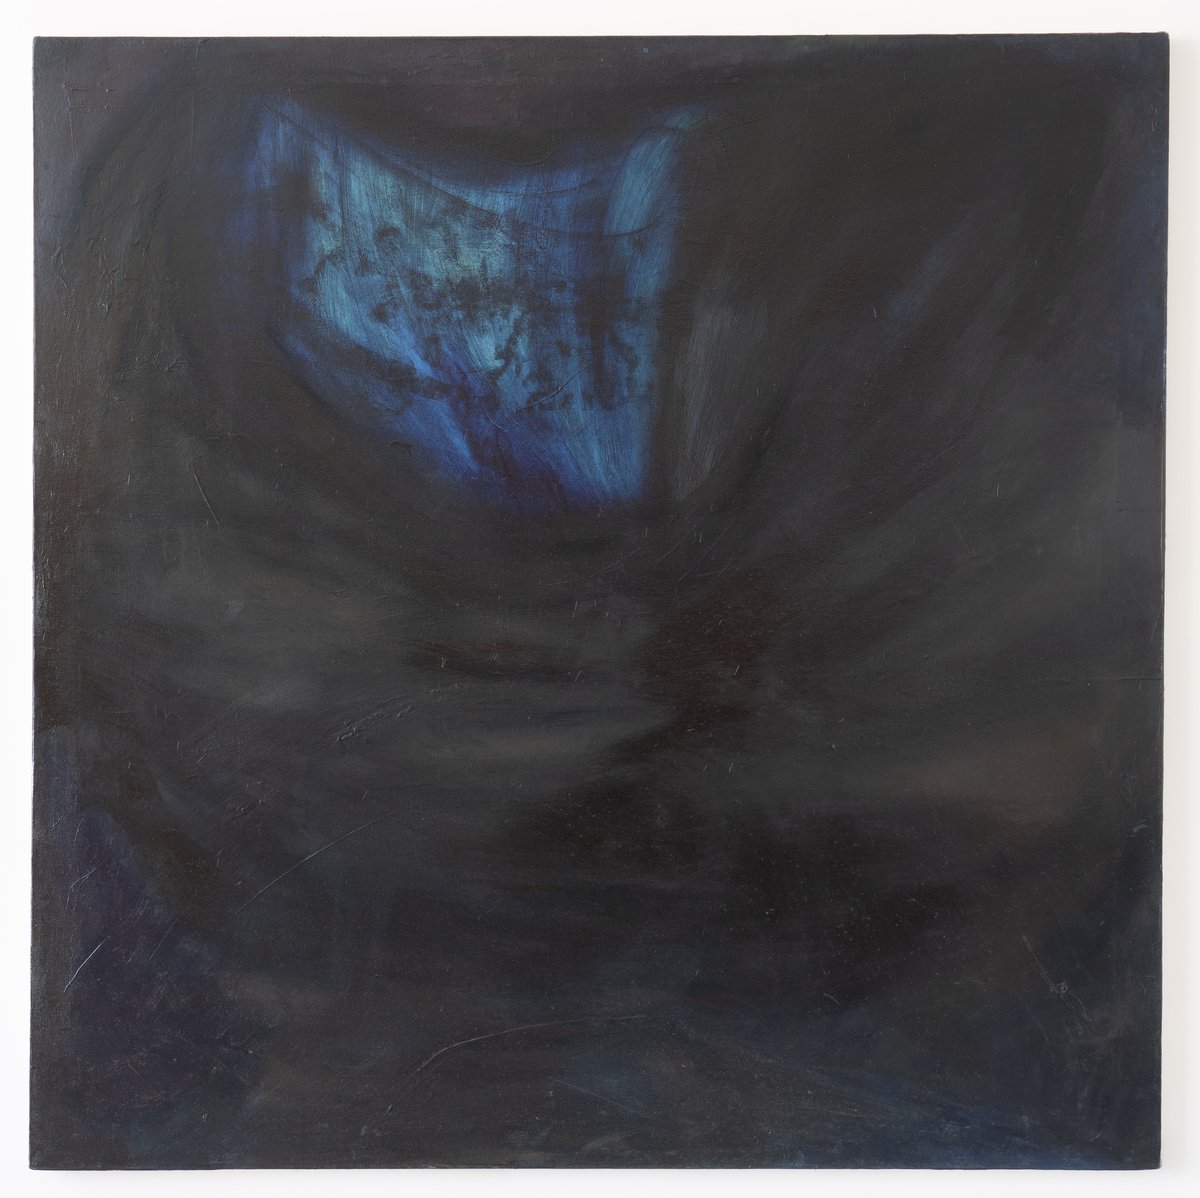 Dominique KnowlesAnoyo, 2015-2019Oil on canvas137.1 x 137.1 cm